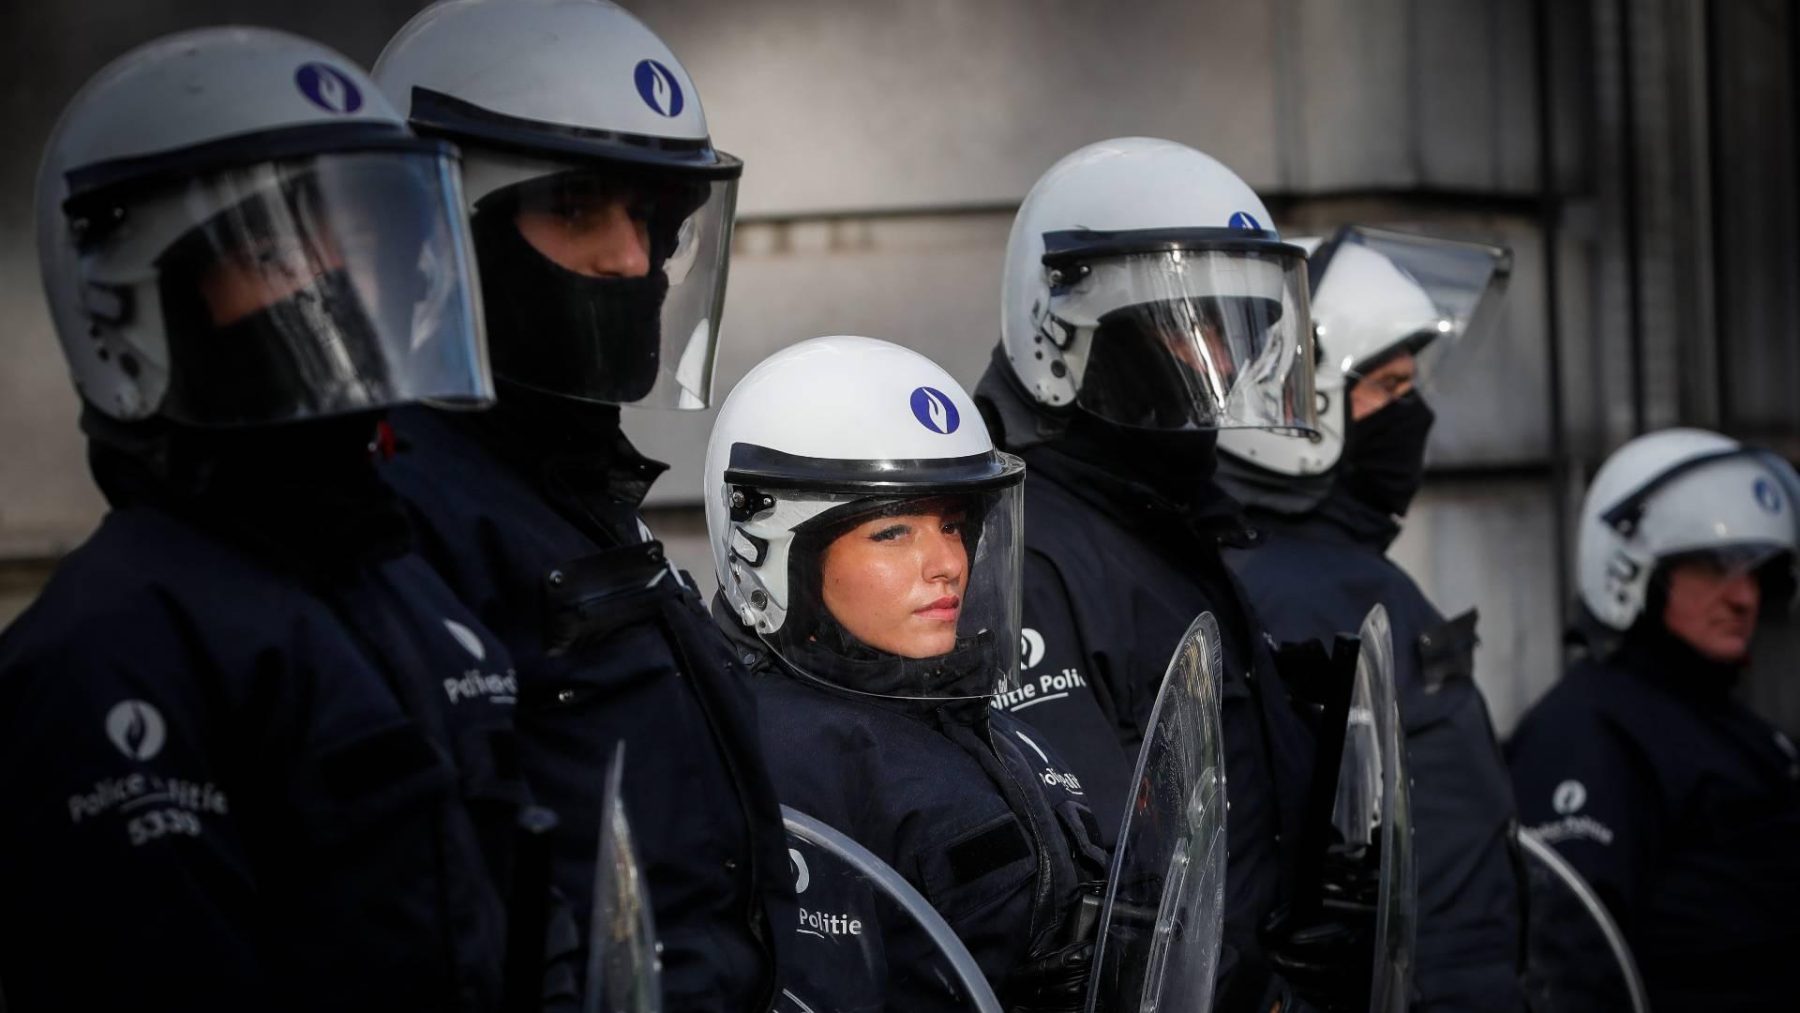 Onderzoek naar rol Belgische politie na dood ontsnapte Nederlander